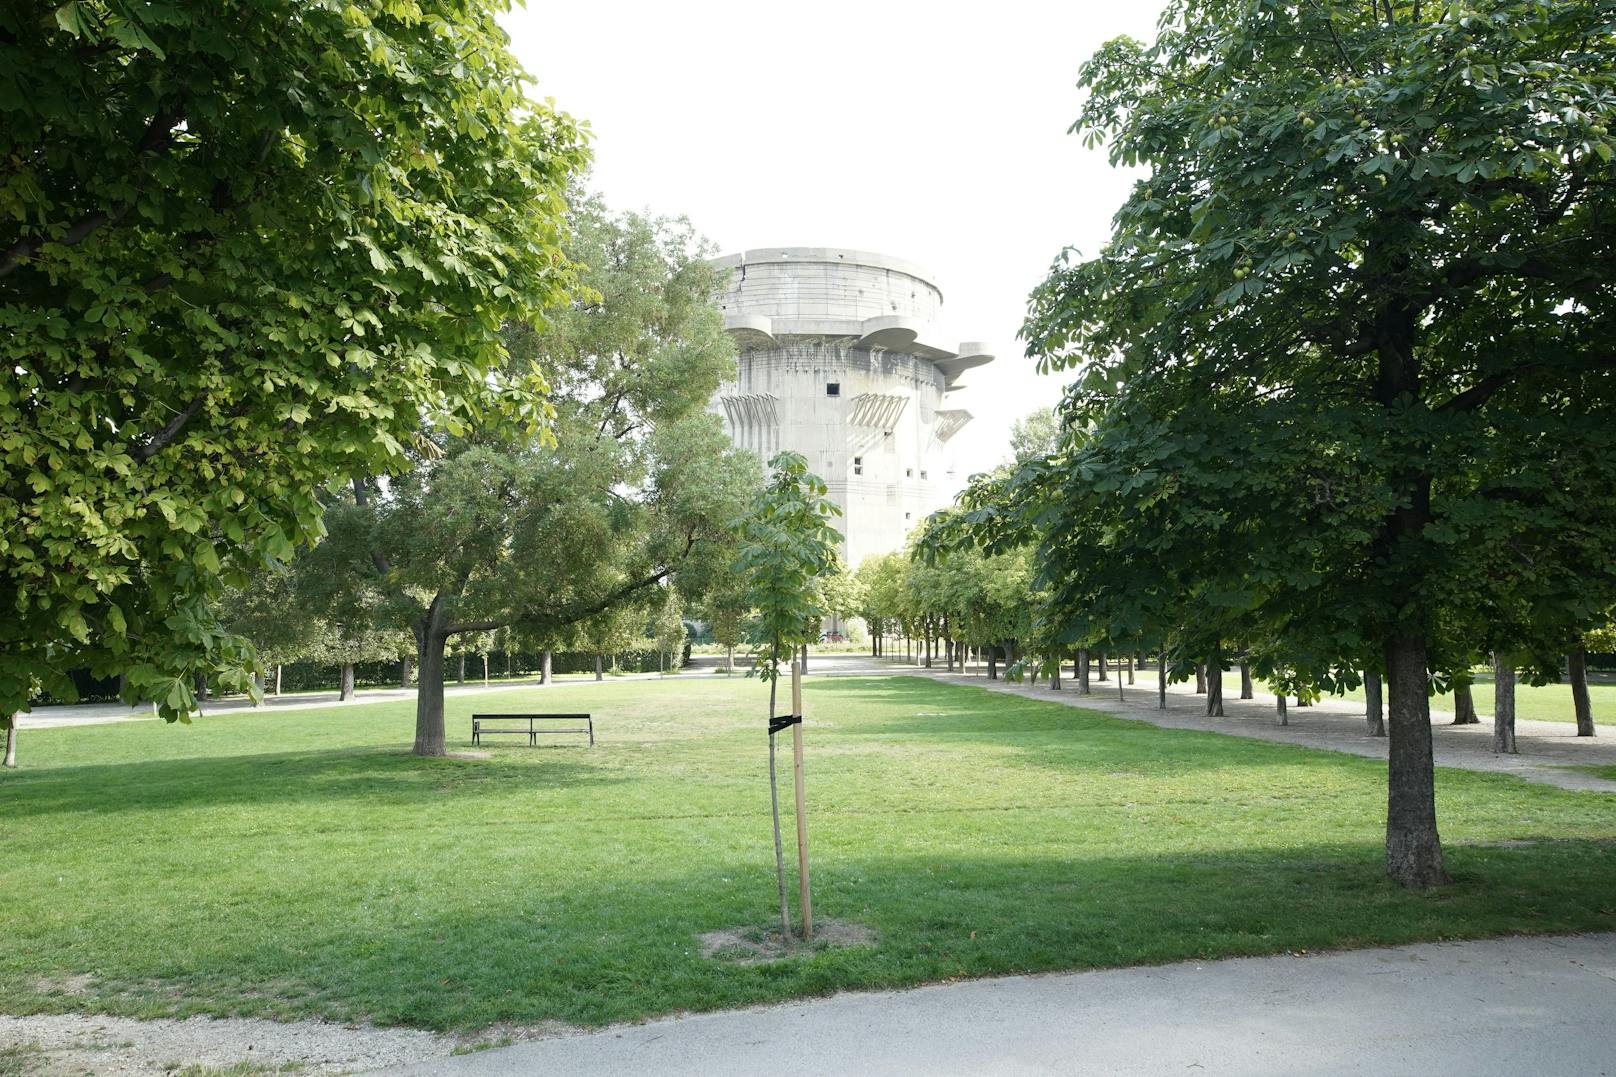 Der Augarten (Wien-Leopoldstadt) ist für viele Wiener ein Naherholungsgebiet. Die Grünen befürchten massive Baumfällungen, damit eine Eventzone gebaut werden kann. Die Petition "Rettet den Augarten" soll das verhindern.